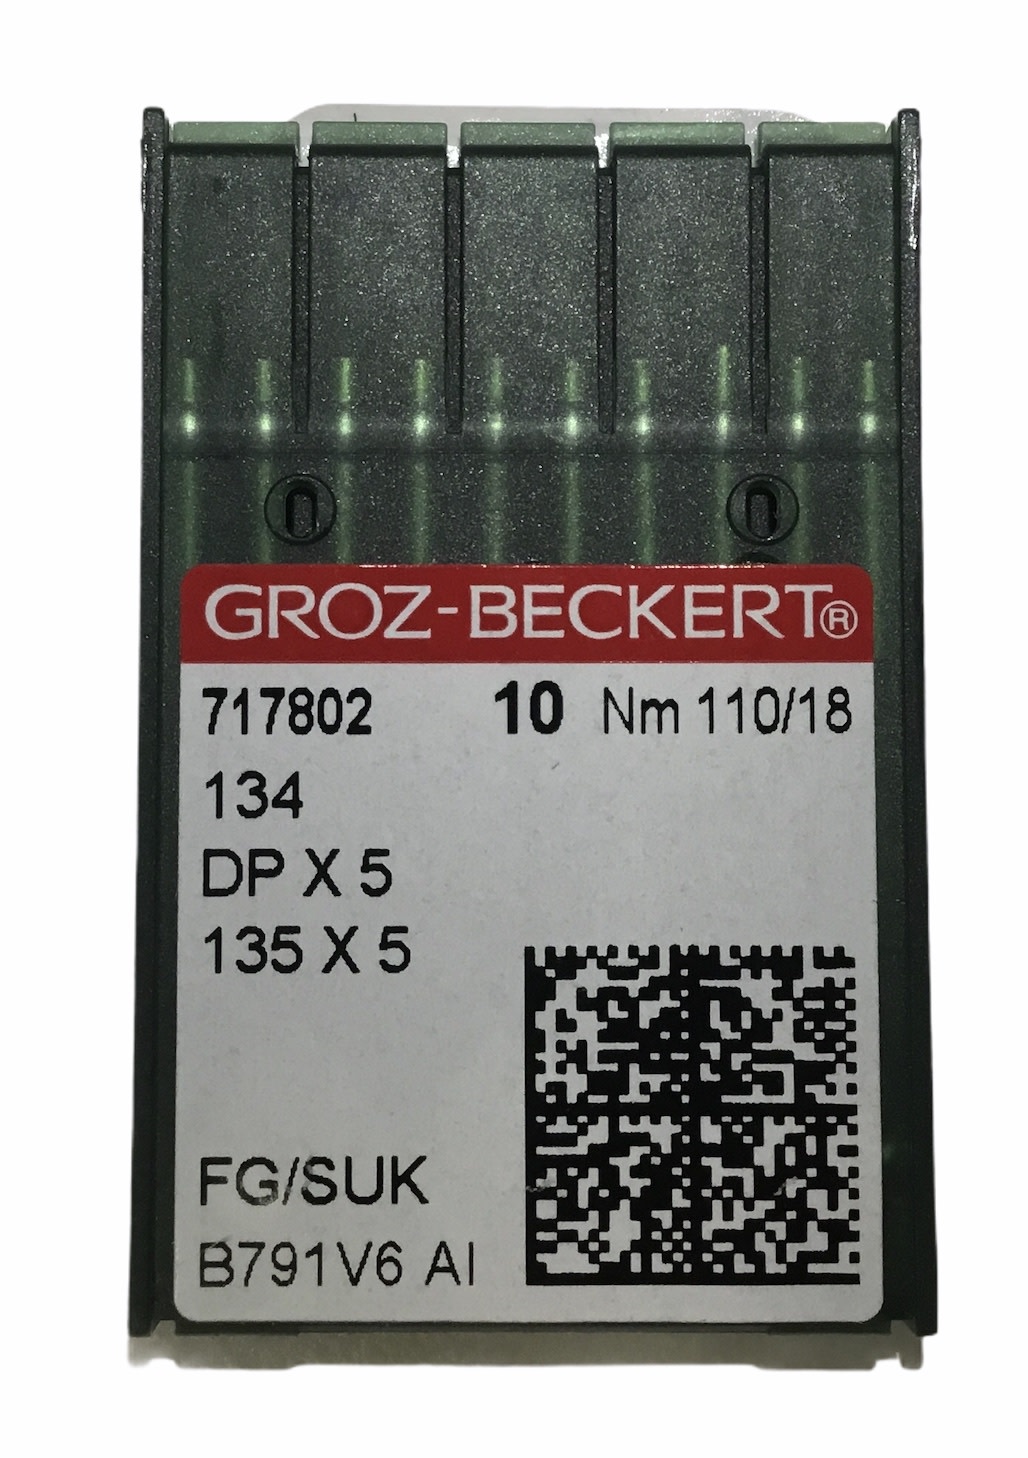 Handi Quilter Aiguille HQ Groz Beckert DPX5 Gr18 2 paquets de 10